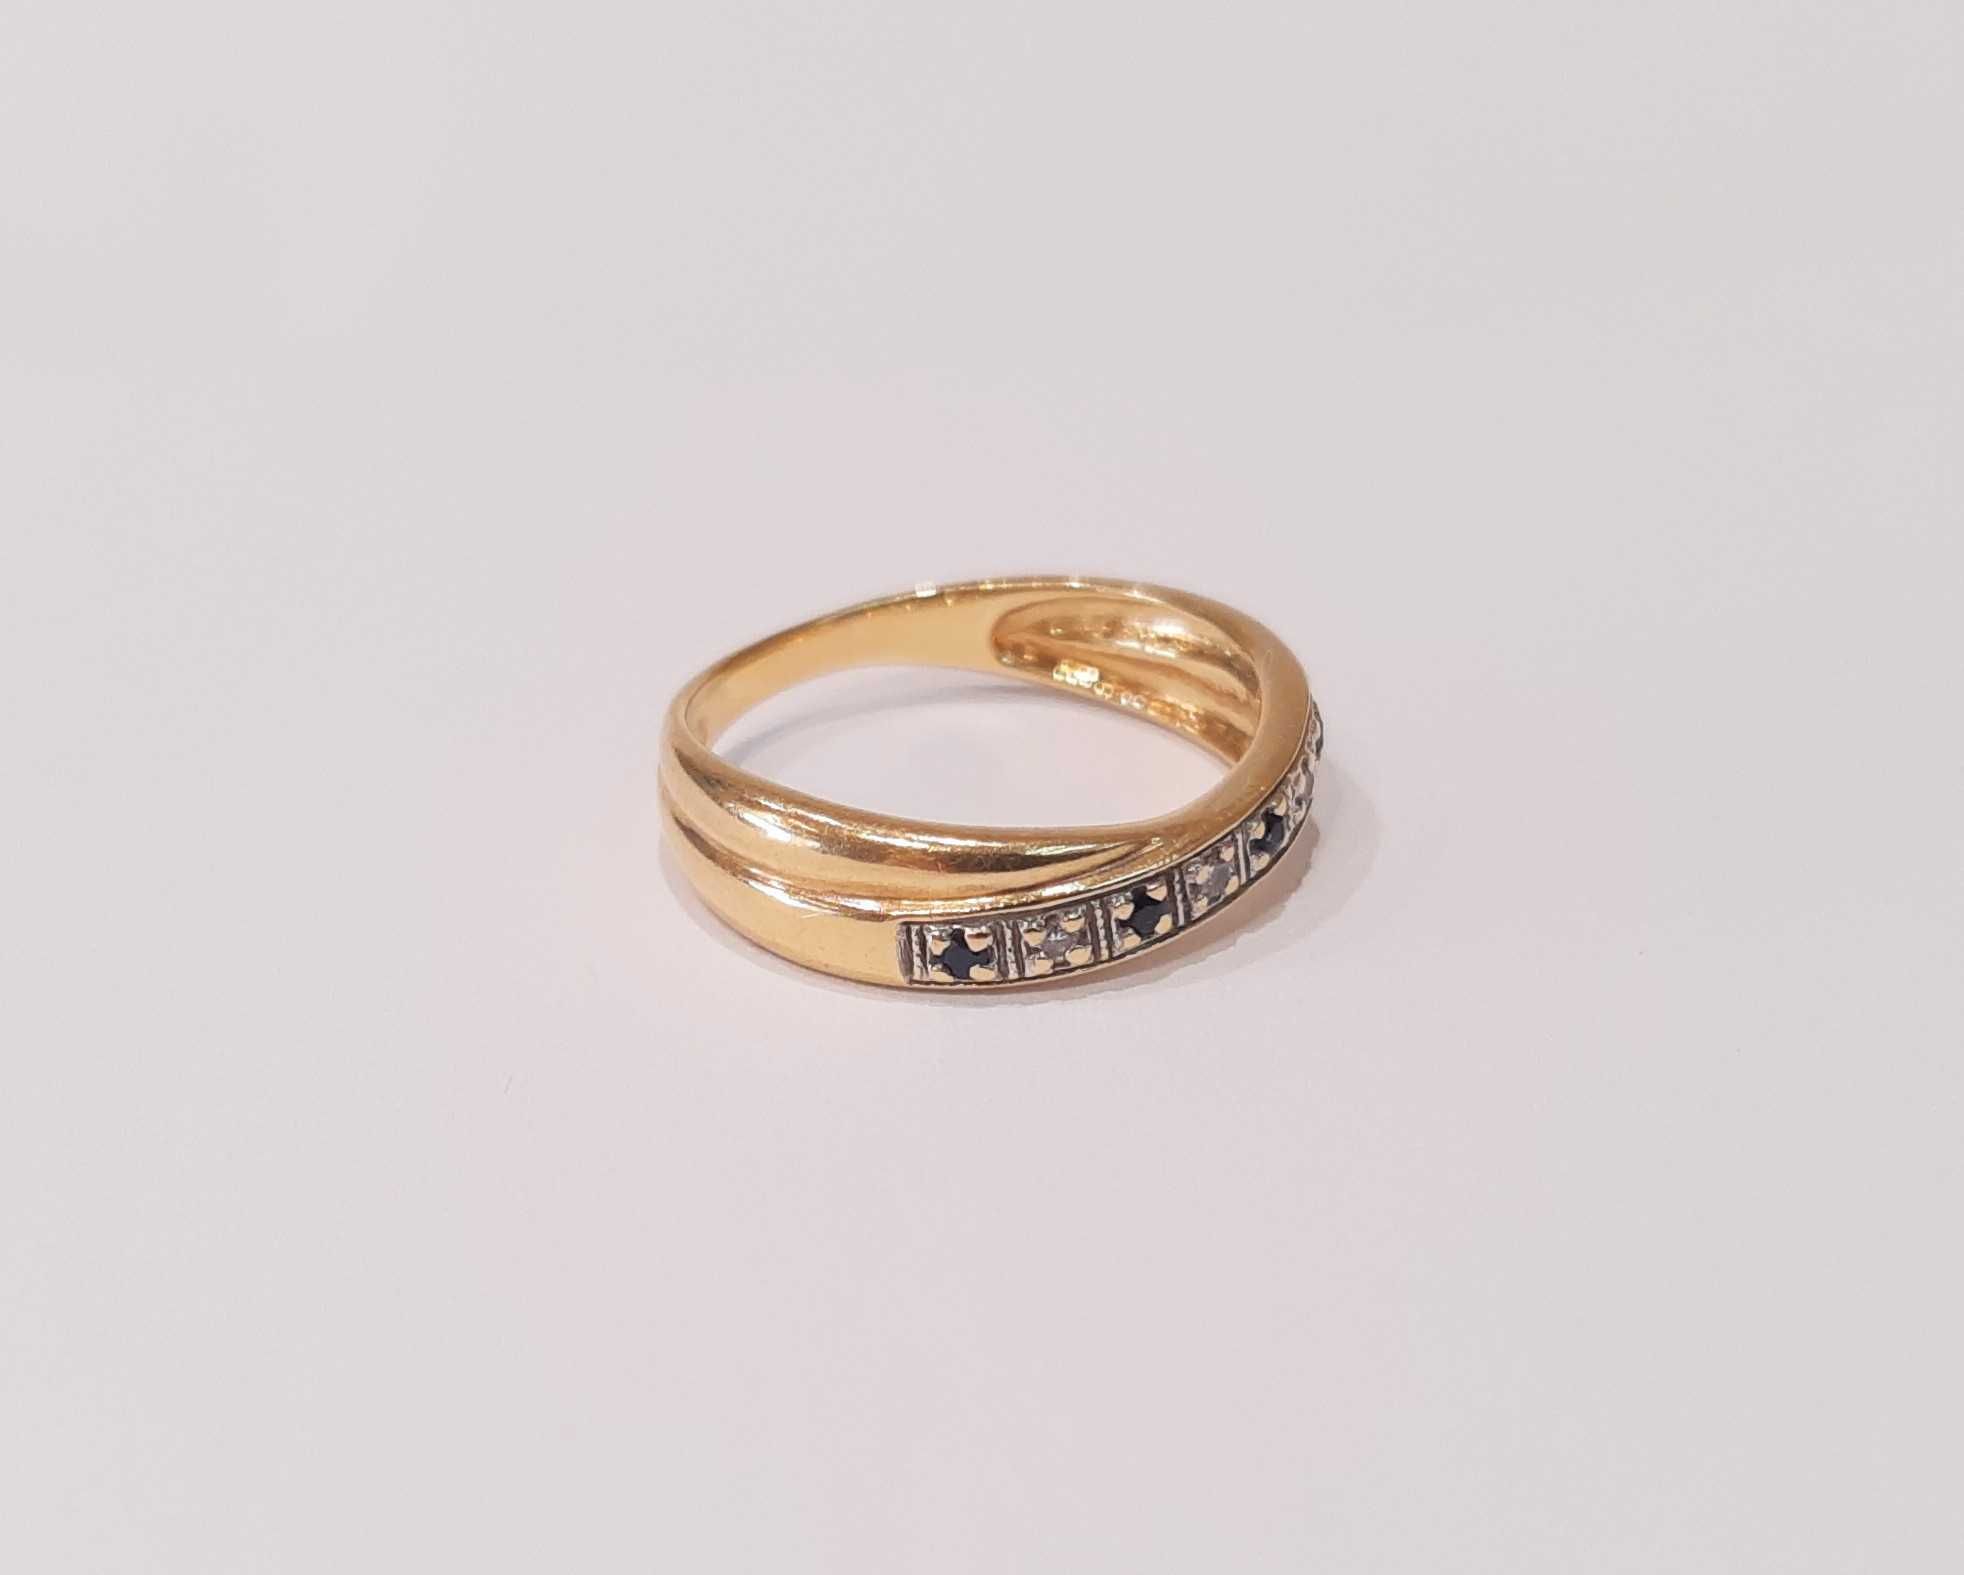 Złoty pierścionek z brylantami i szafirami r.15,5  0,06 ct-3,15g/p.585